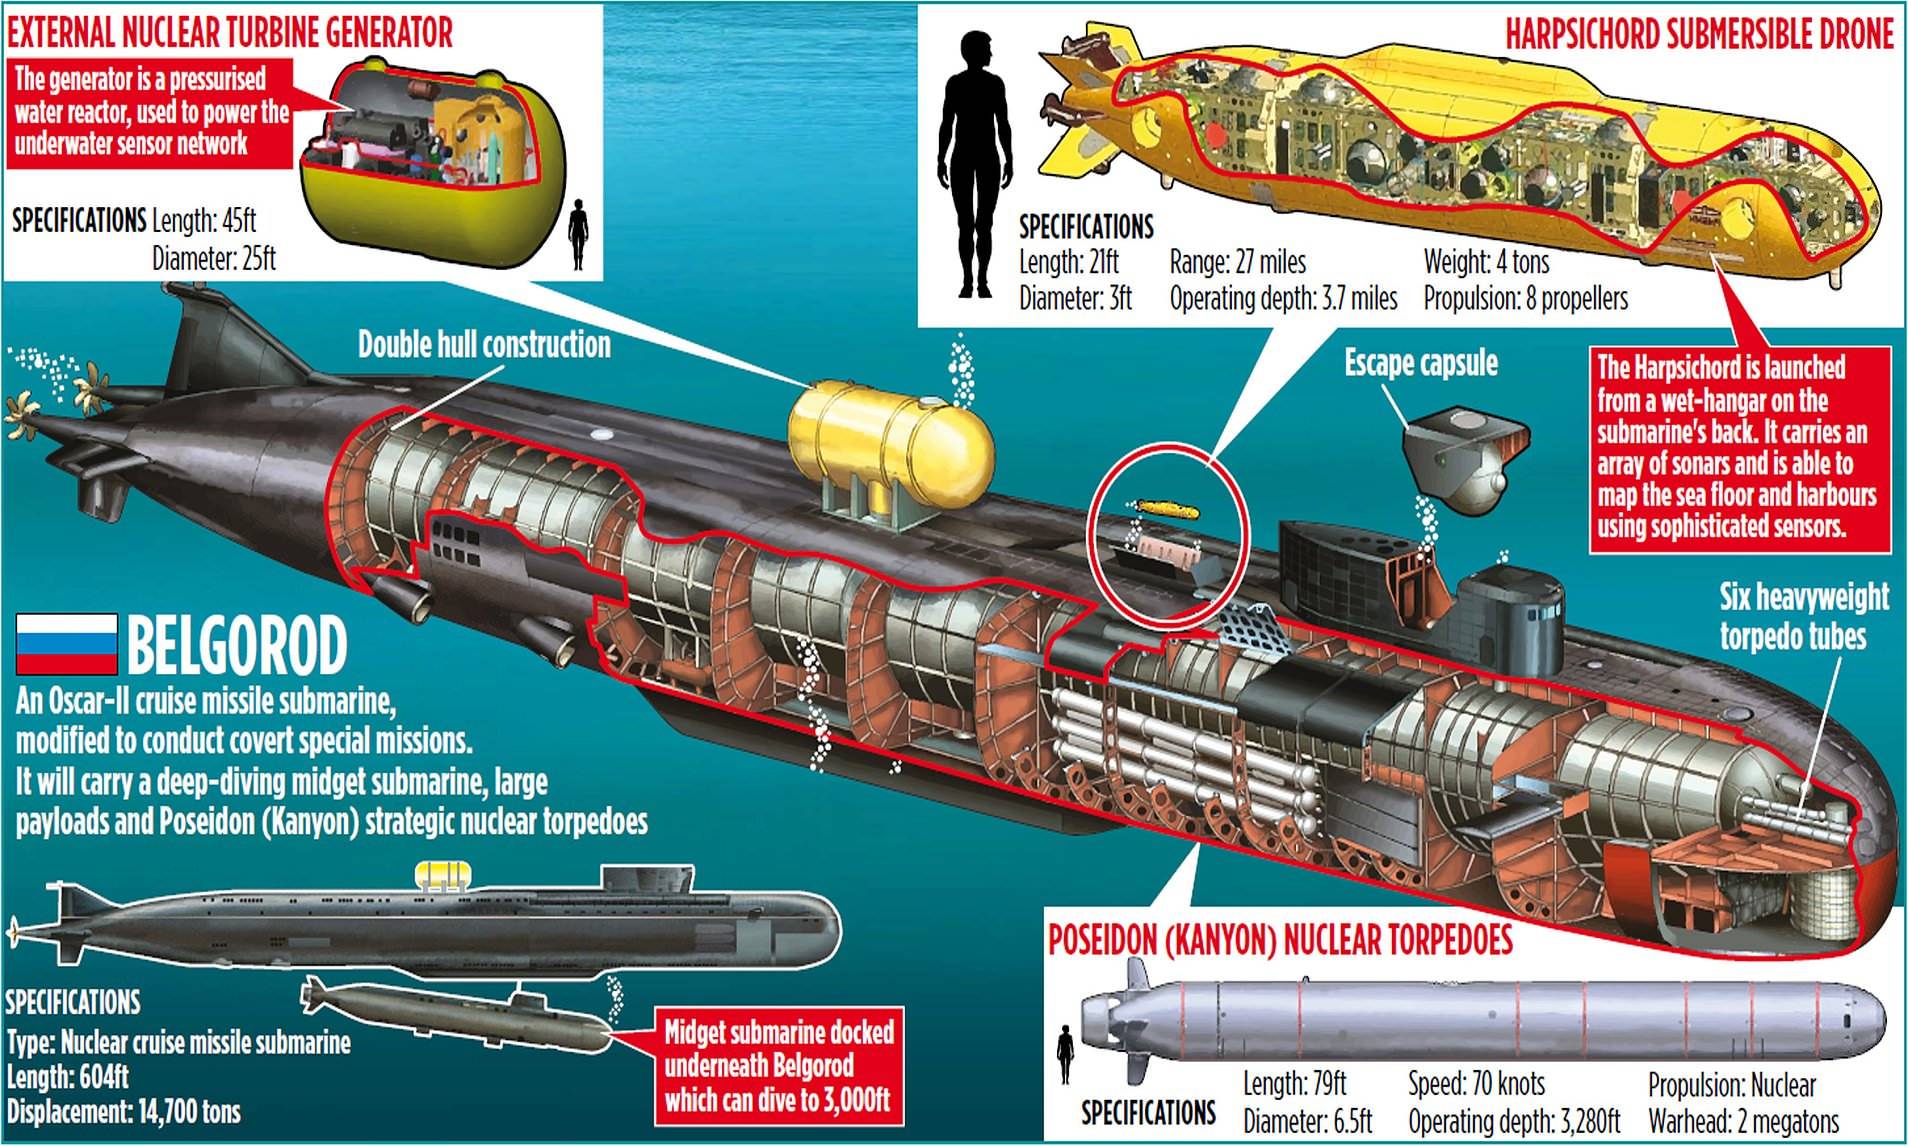 Сколько подводных лодок на вооружении в россии на сегодняшний день?